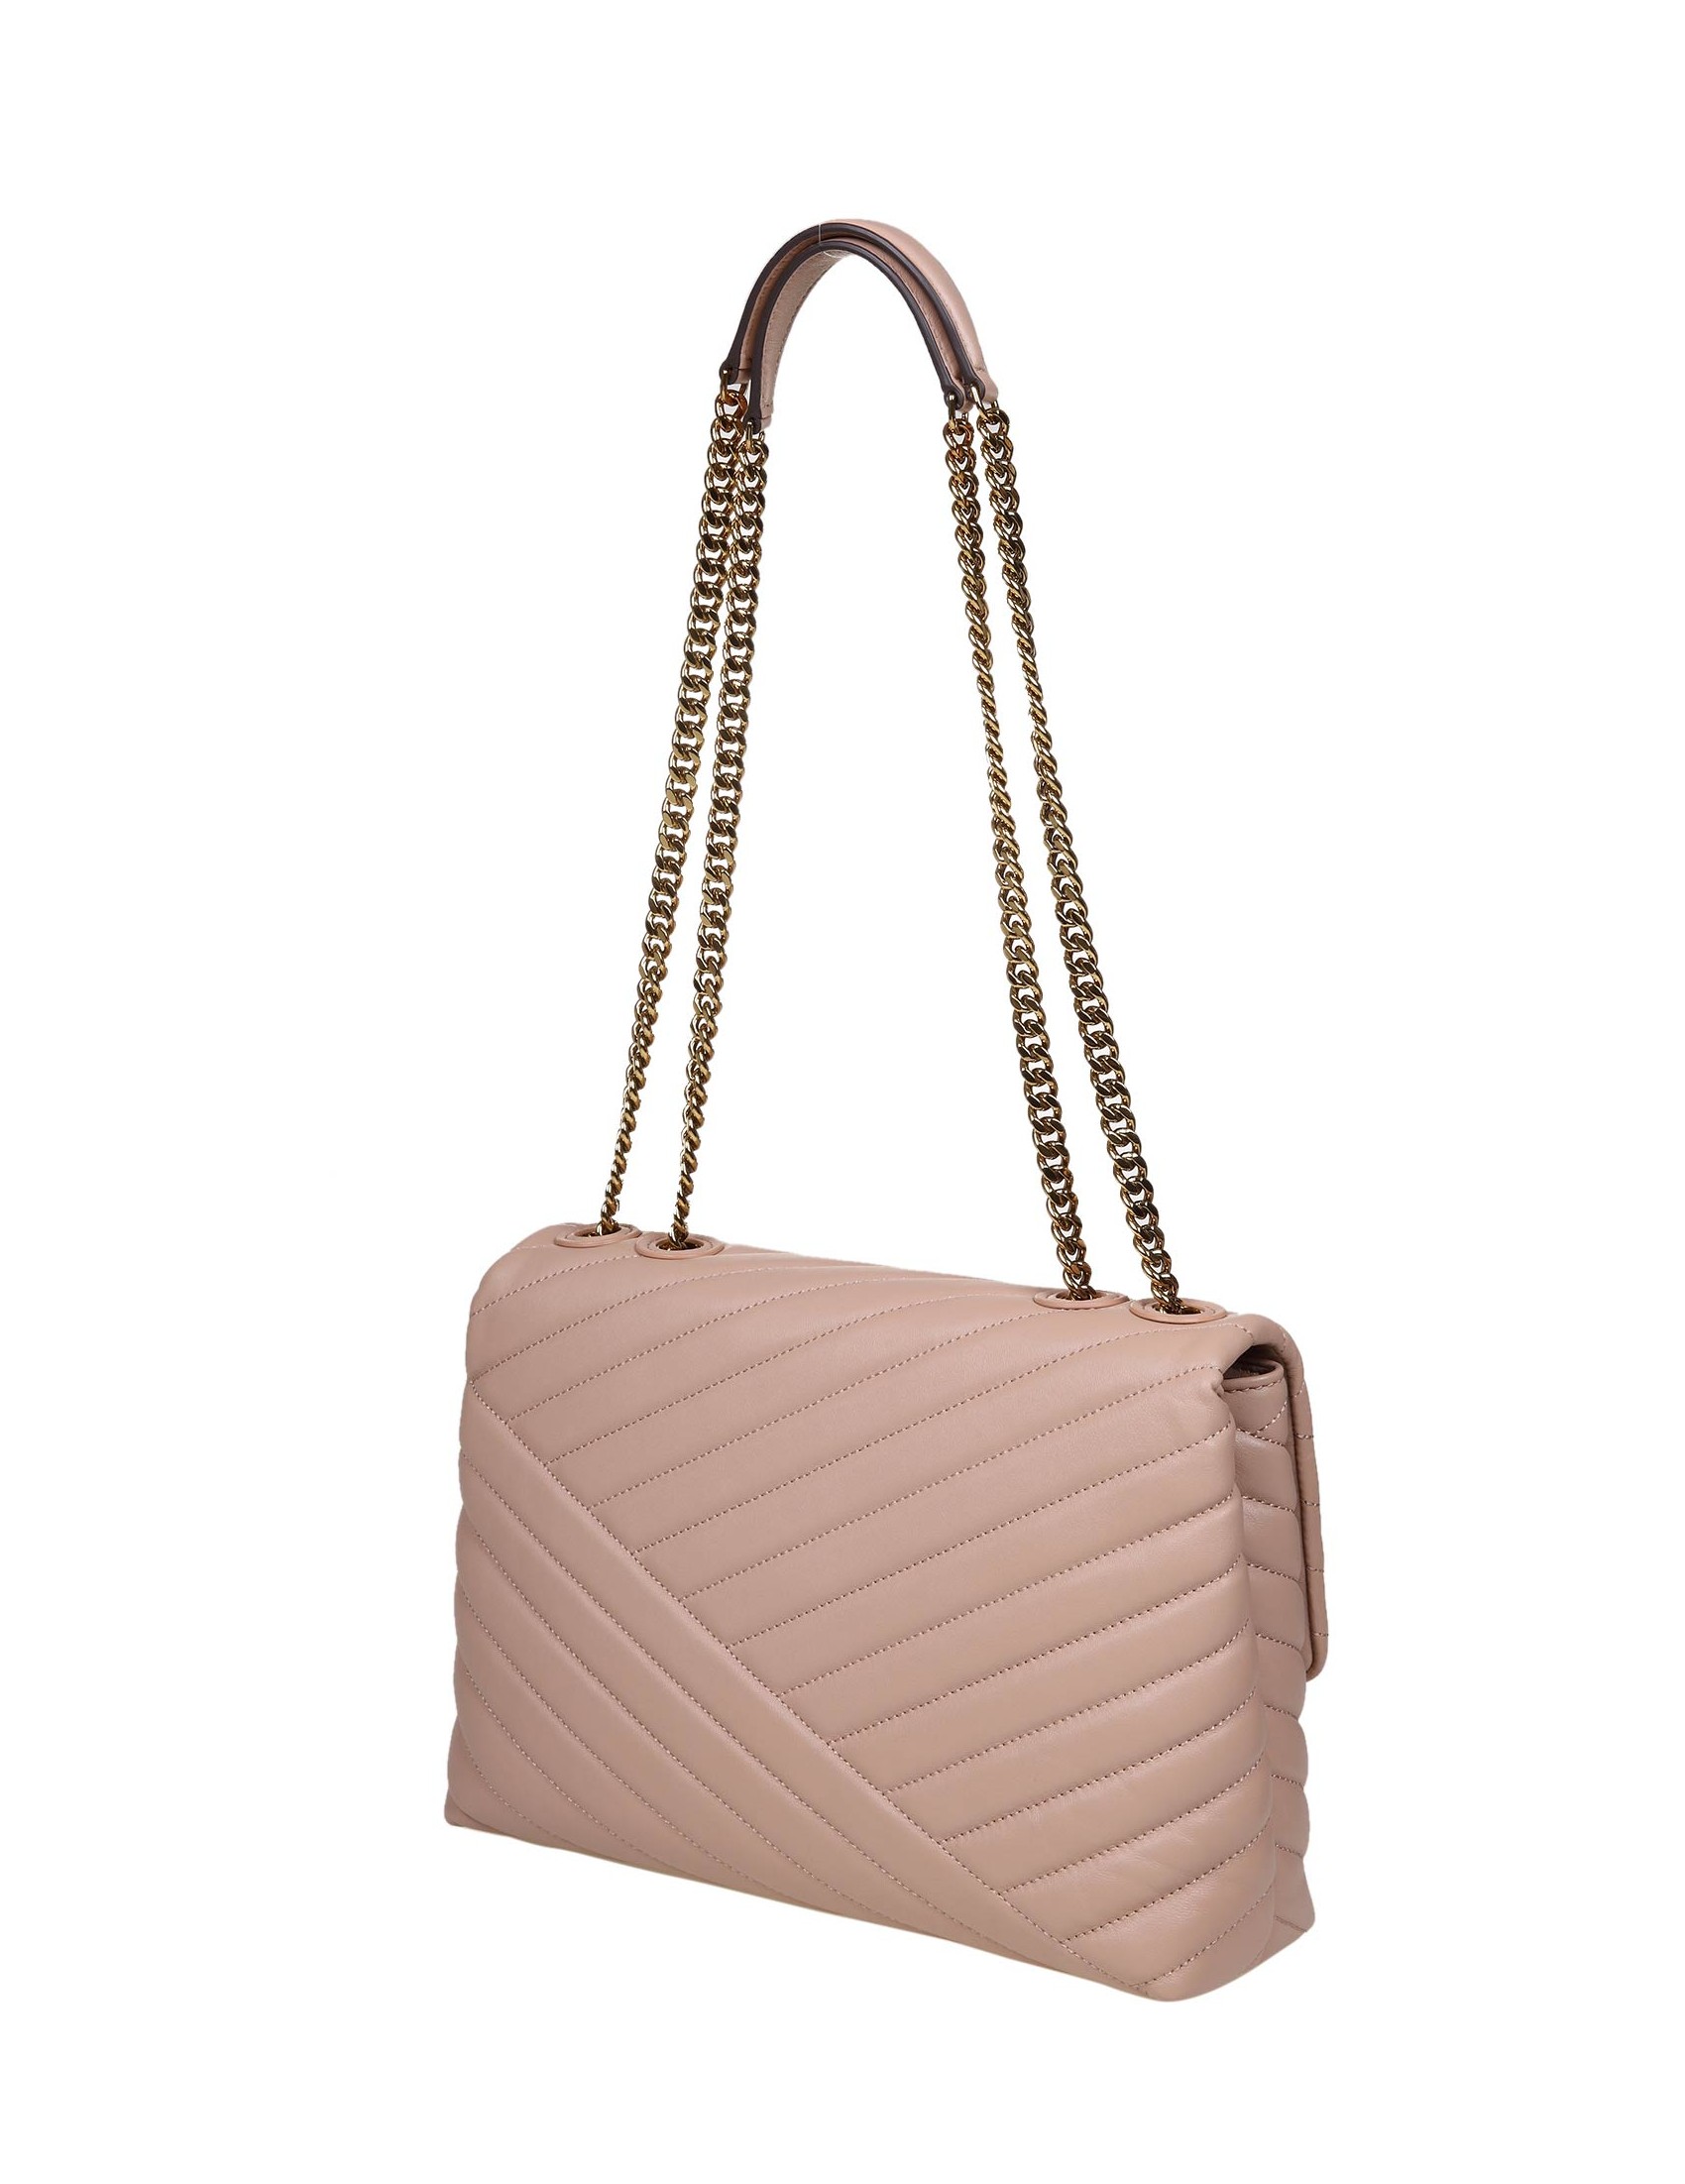 TORY BURCH: shoulder bag for woman - Sand  Tory Burch shoulder bag 90446  online at